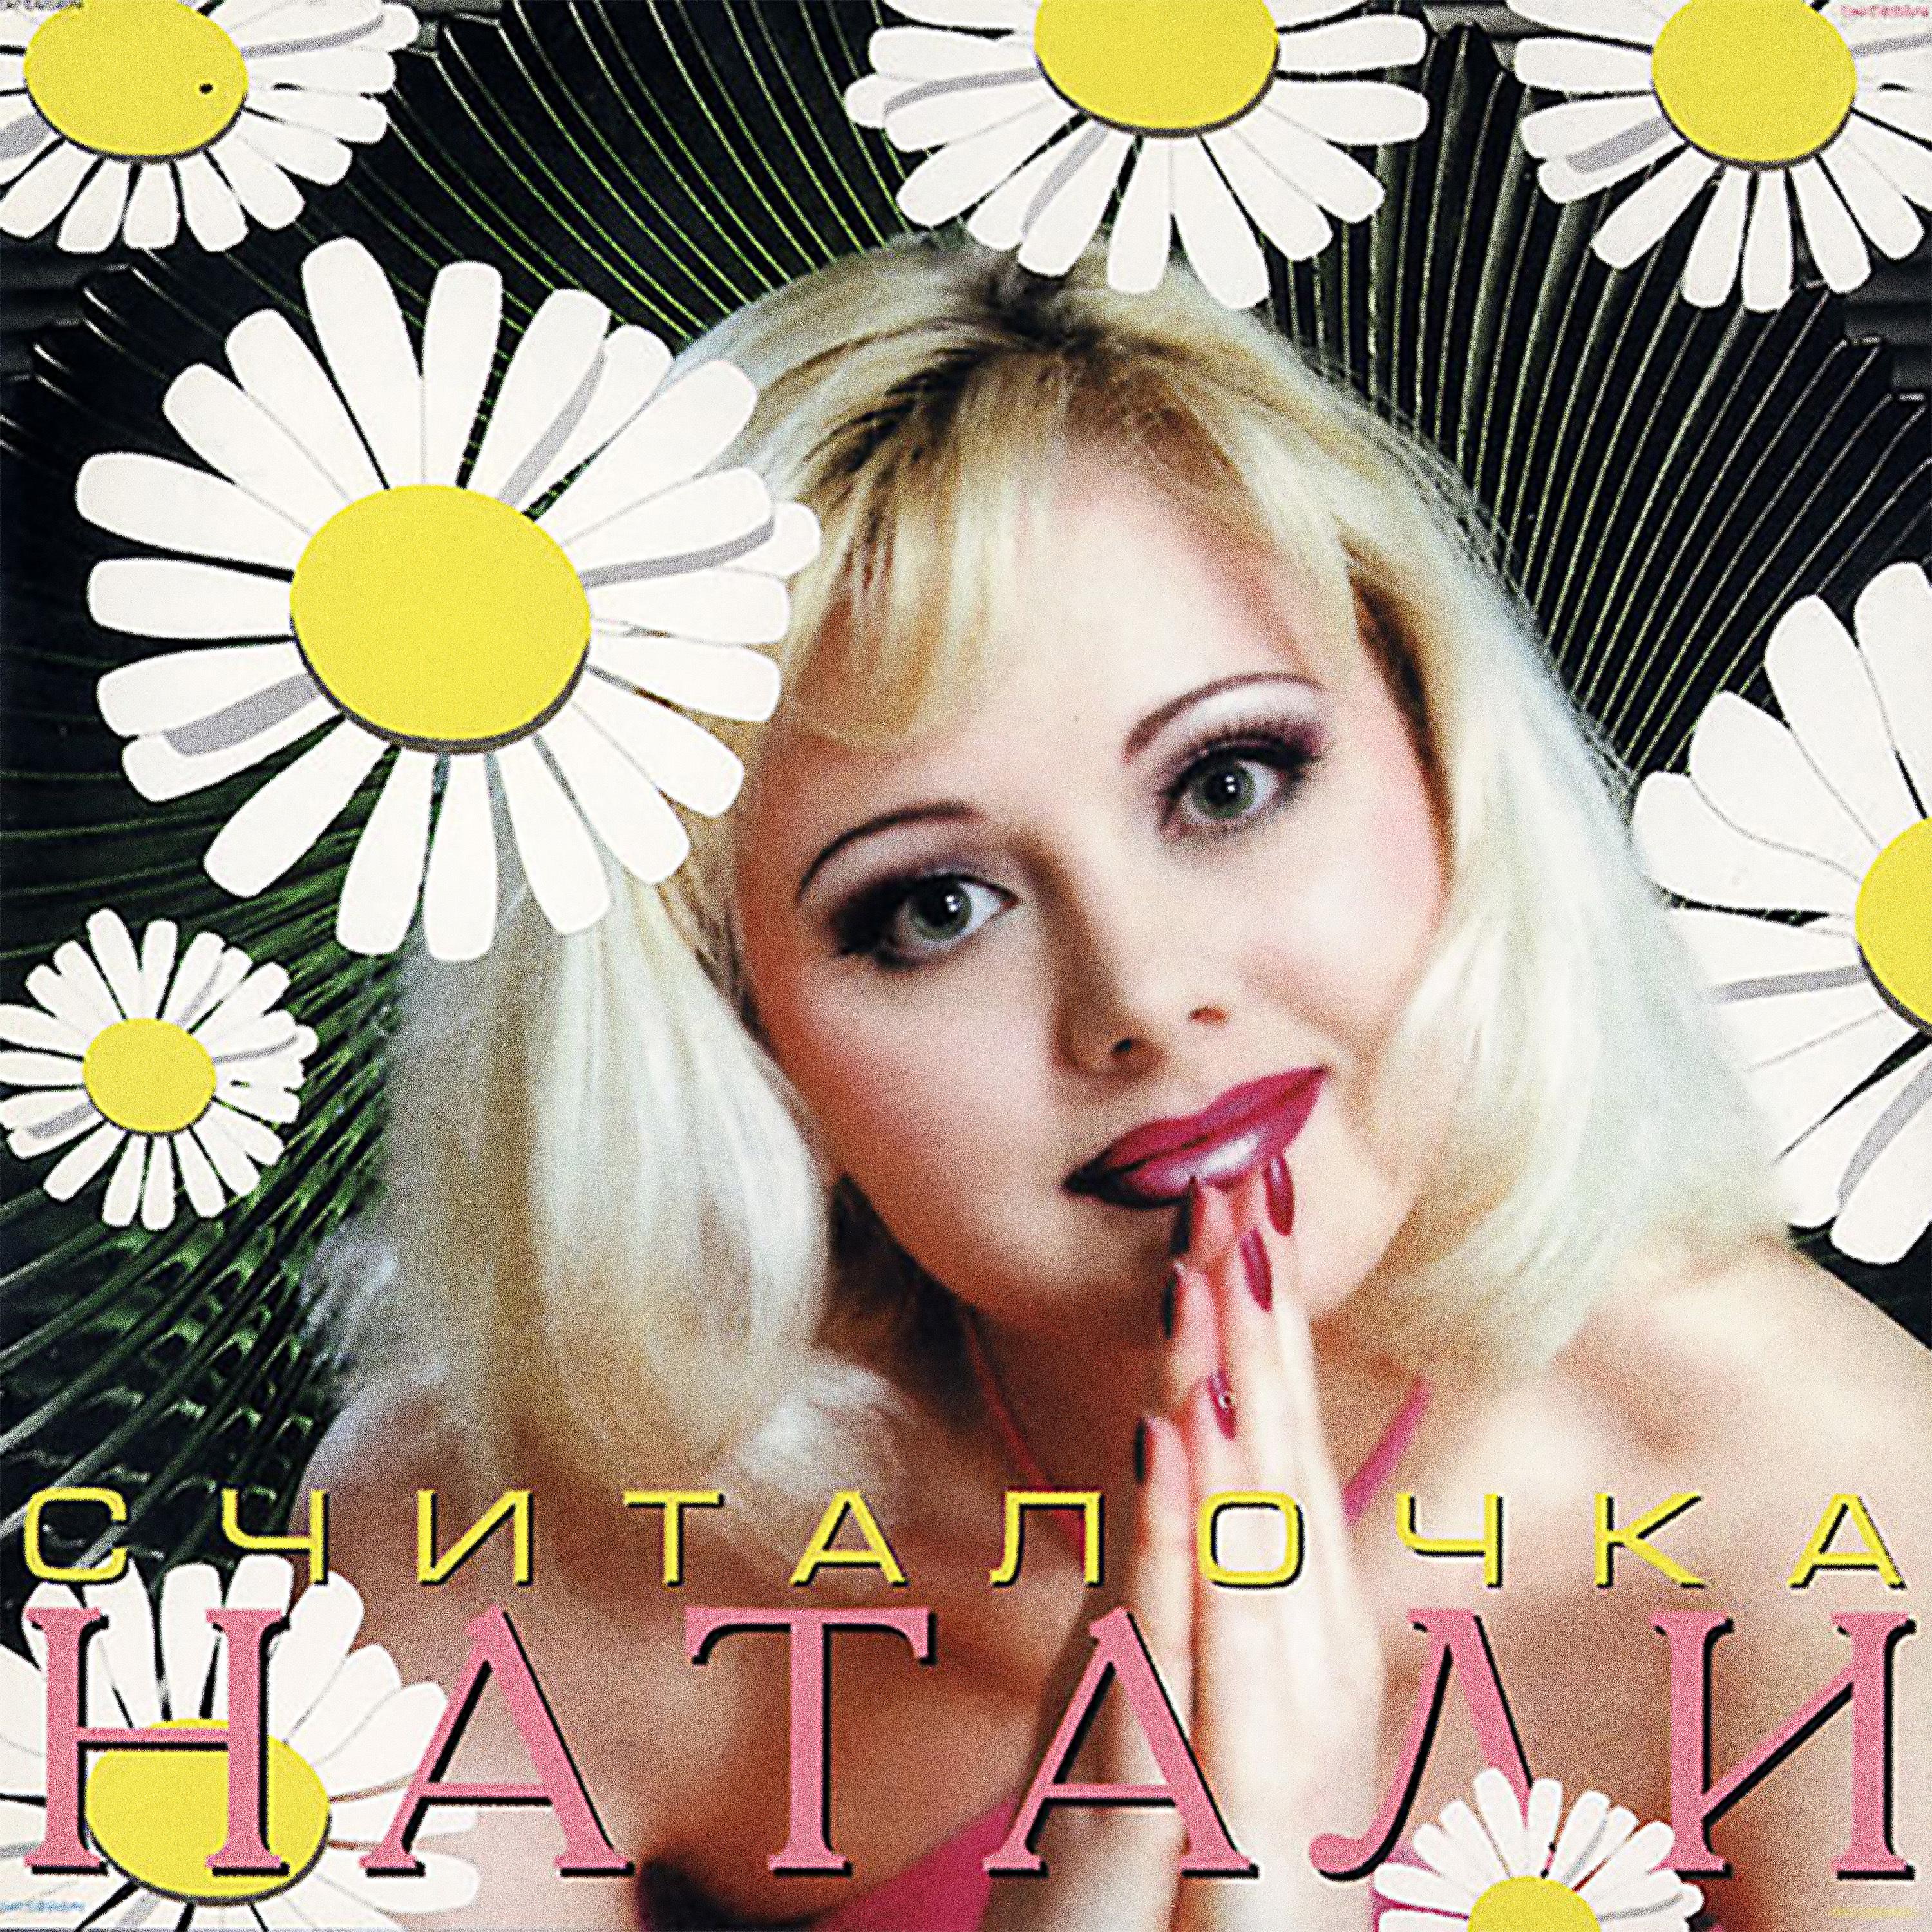 Натали вышла. Натали певица. Натали считалочка 1999 альбом. Натали певица 90. Диск певица Натали.